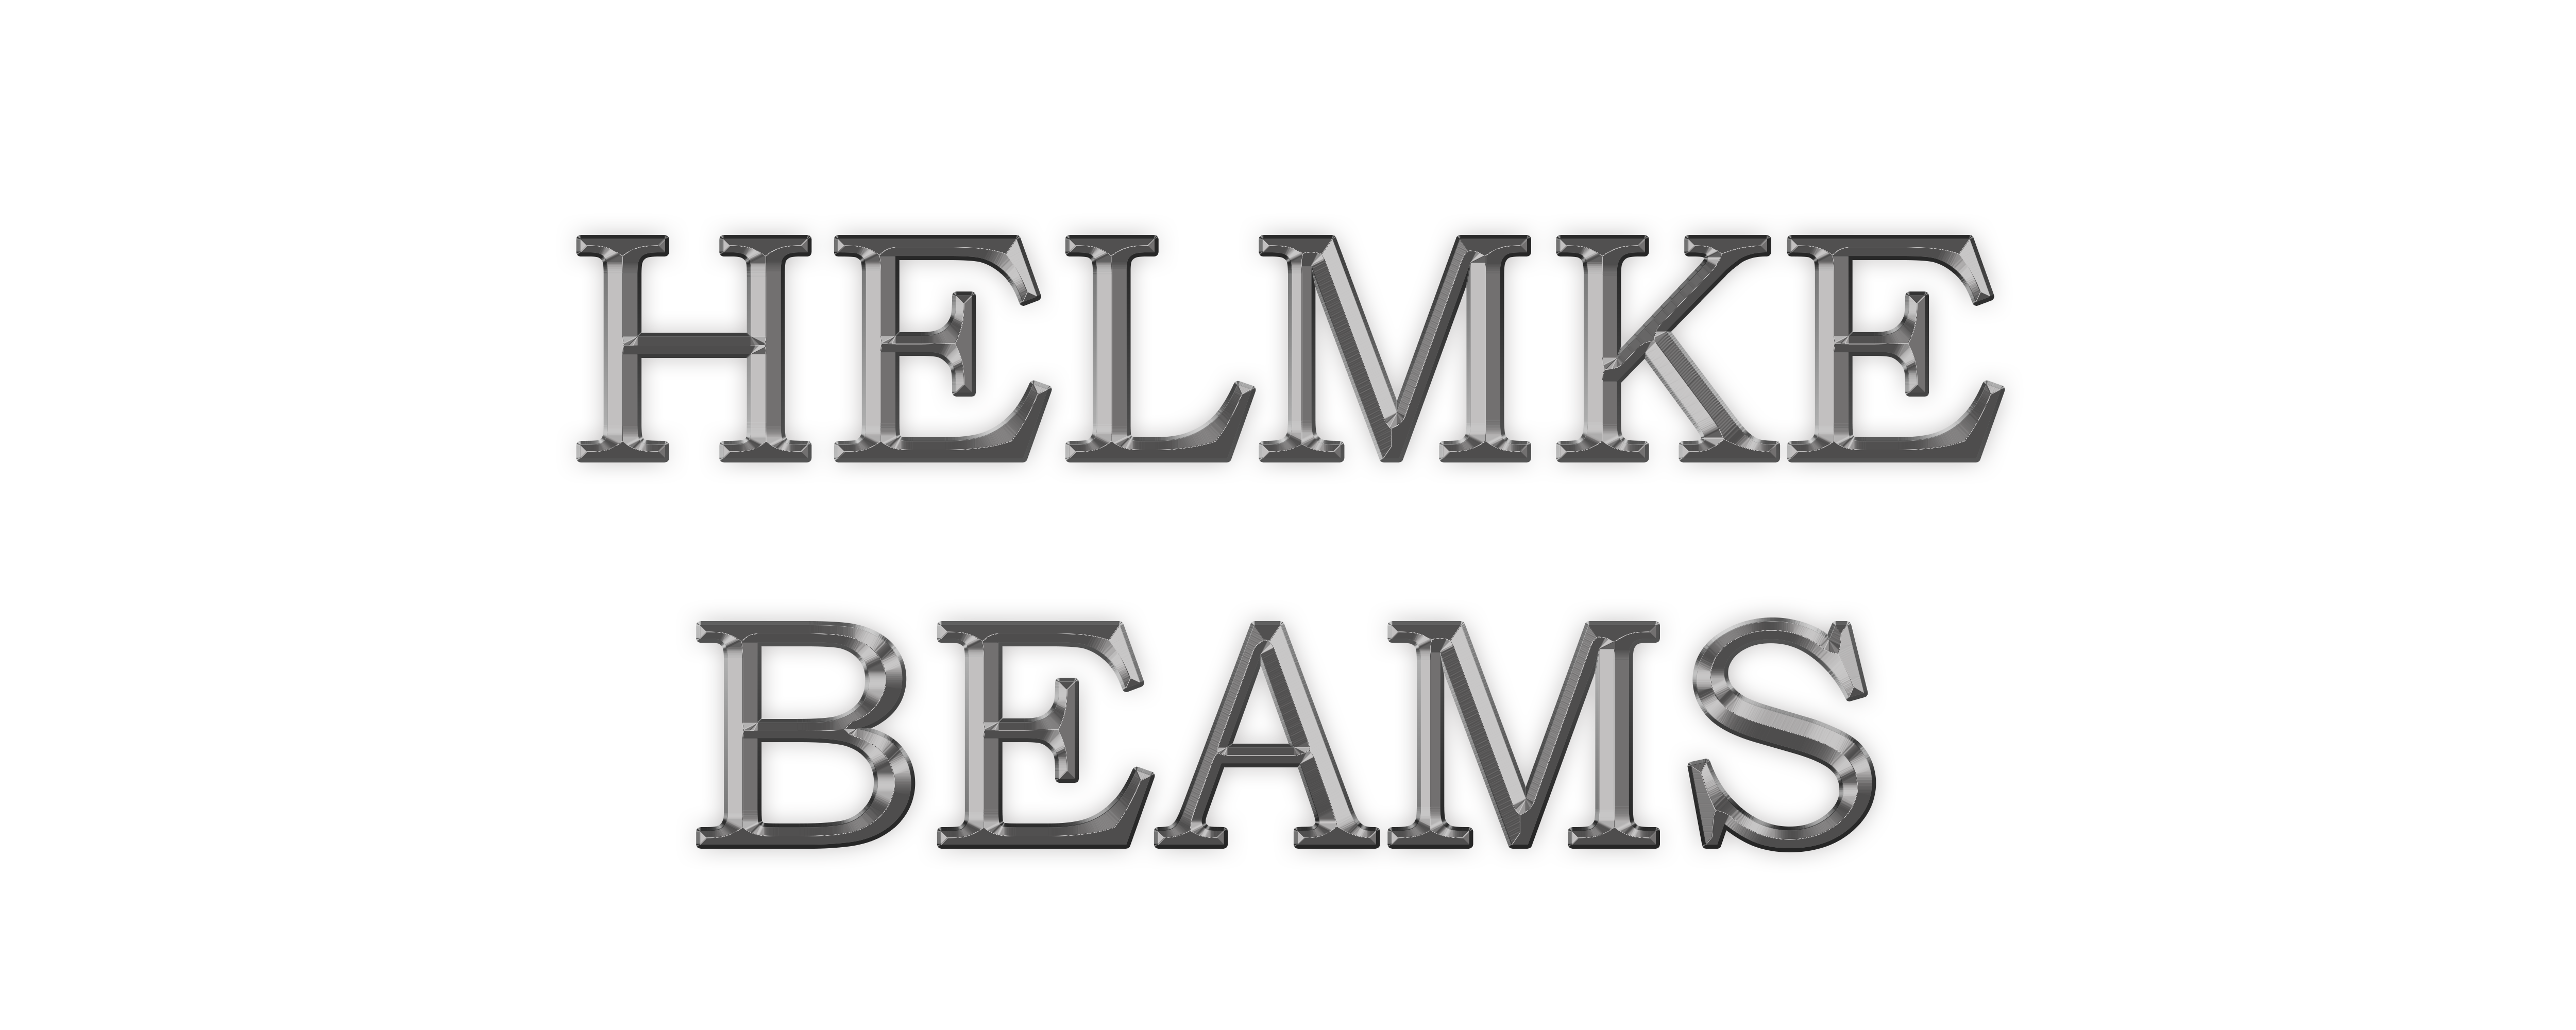 helmke beams logo